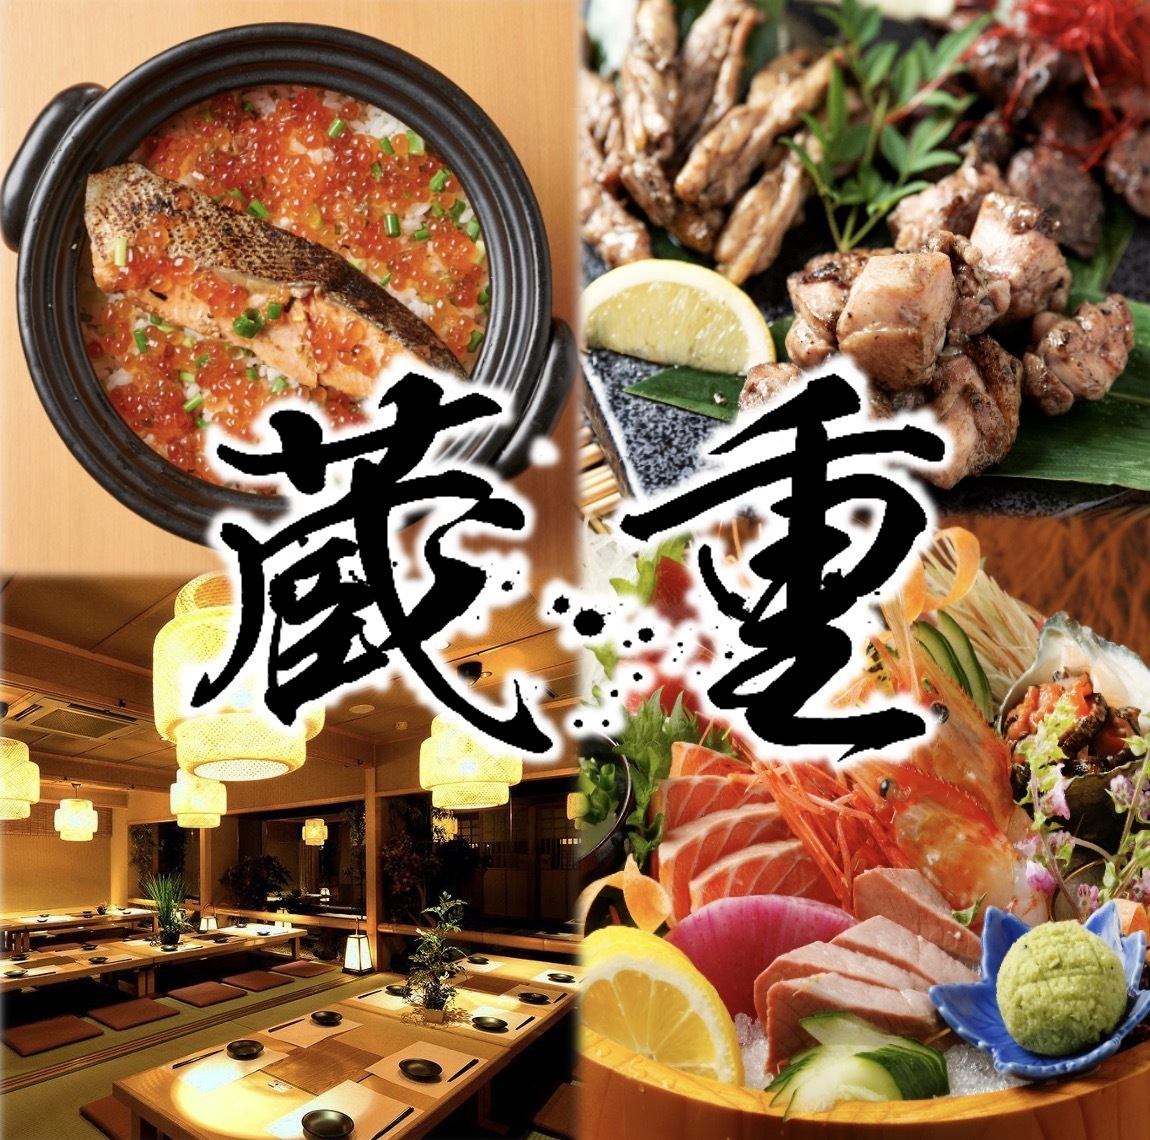 【완전 개인실】 편안한 일본식 개인실에서 제철 생선을 즐겨 주세요.